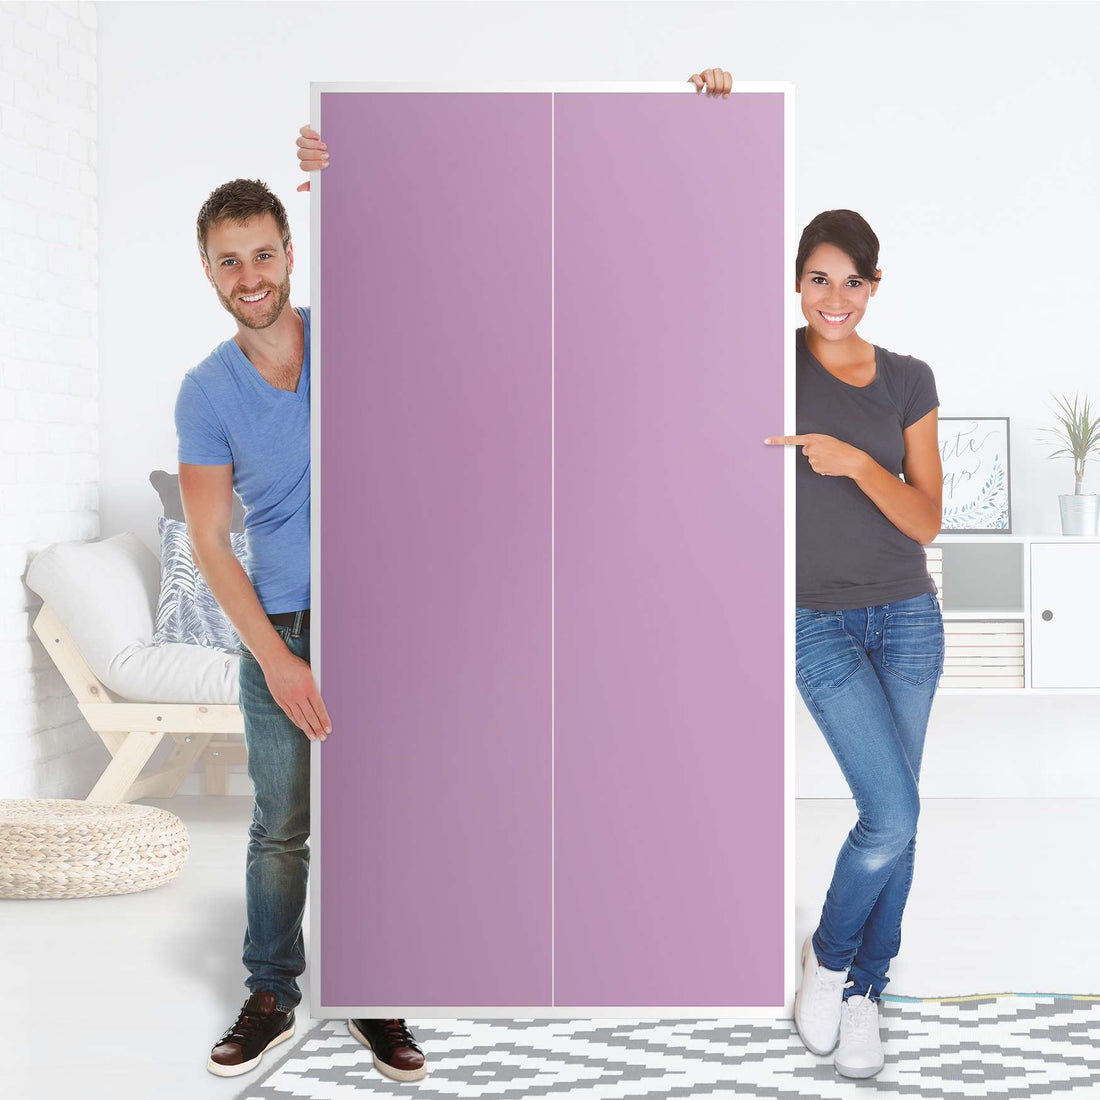 Klebefolie für Möbel Flieder Light - IKEA Pax Schrank 201 cm Höhe - 2 Türen - Folie